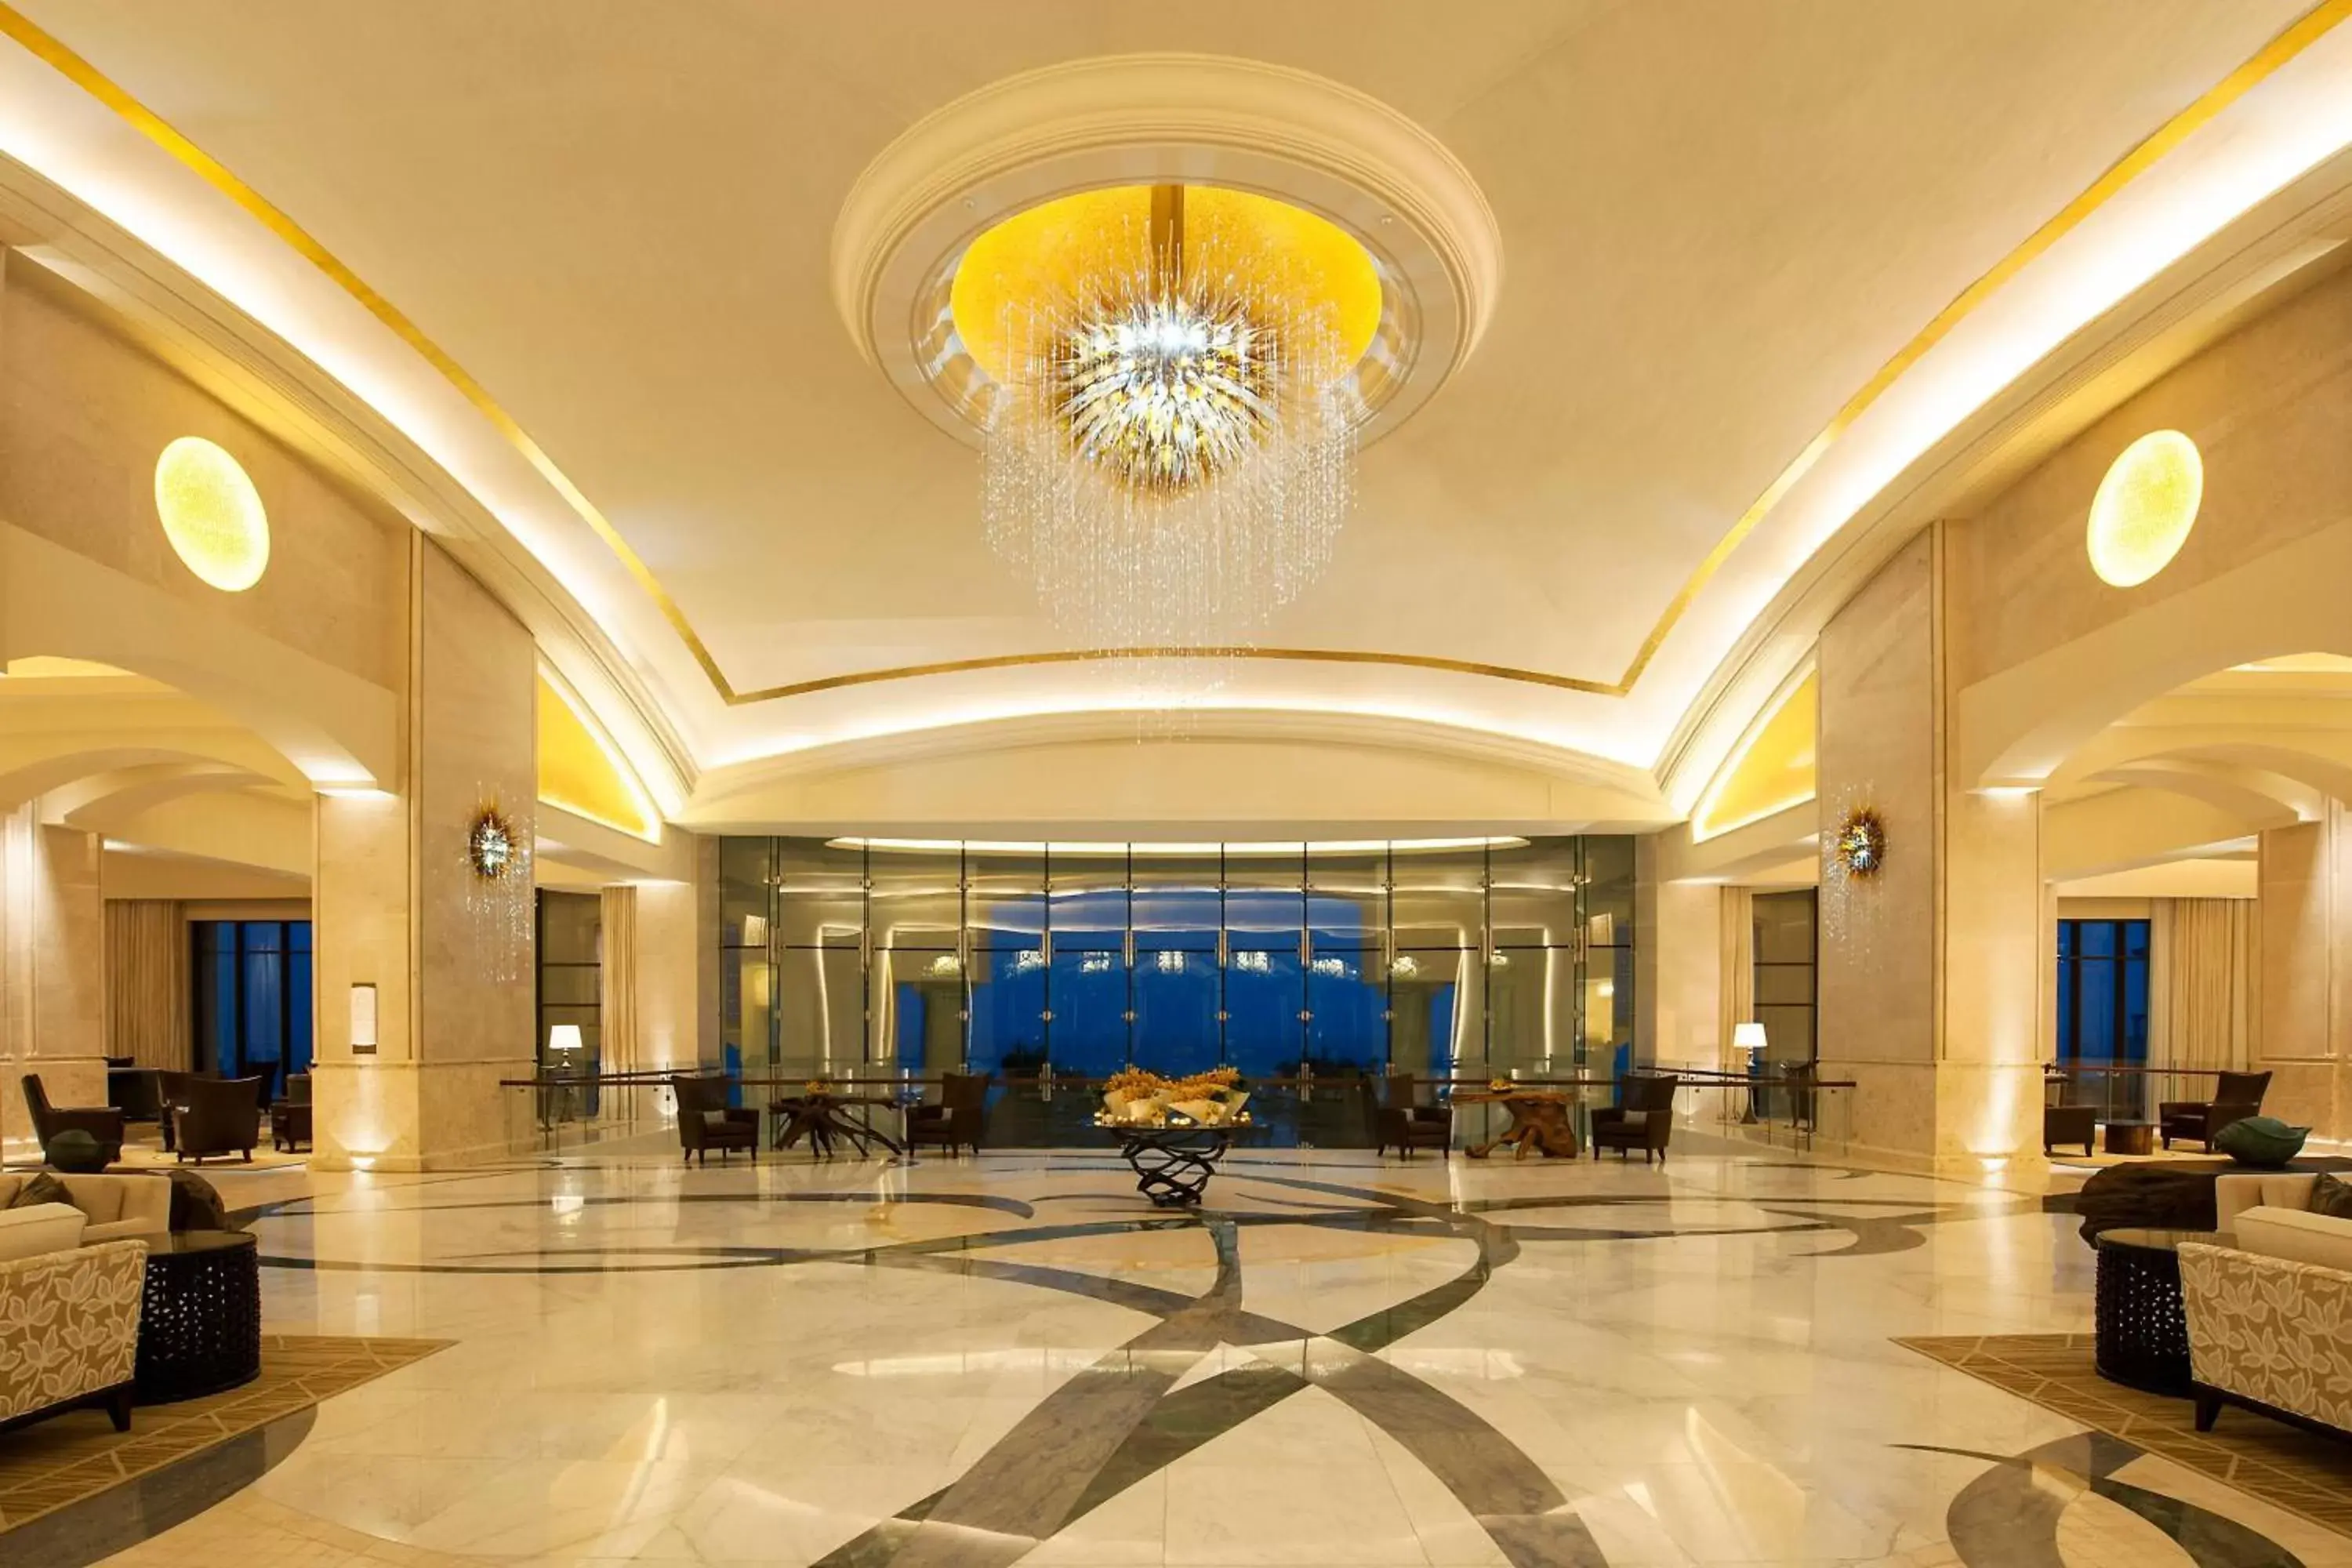 Lobby or reception, Lobby/Reception in The St. Regis Saadiyat Island Resort, Abu Dhabi